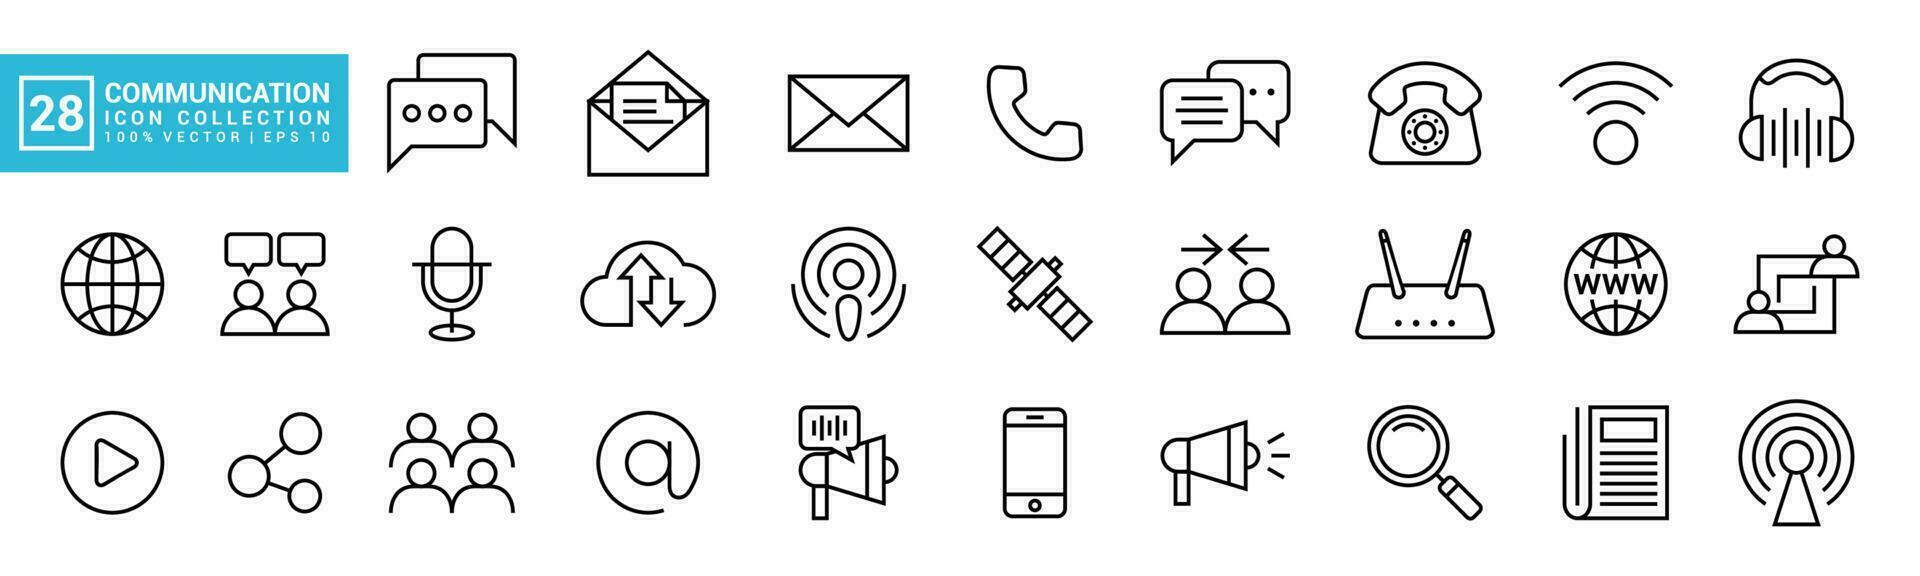 coleção do ícones relacionado para comunicação, bater papo, relação, discussão, comunicação ícones editável e redimensionável vetor eps 10.